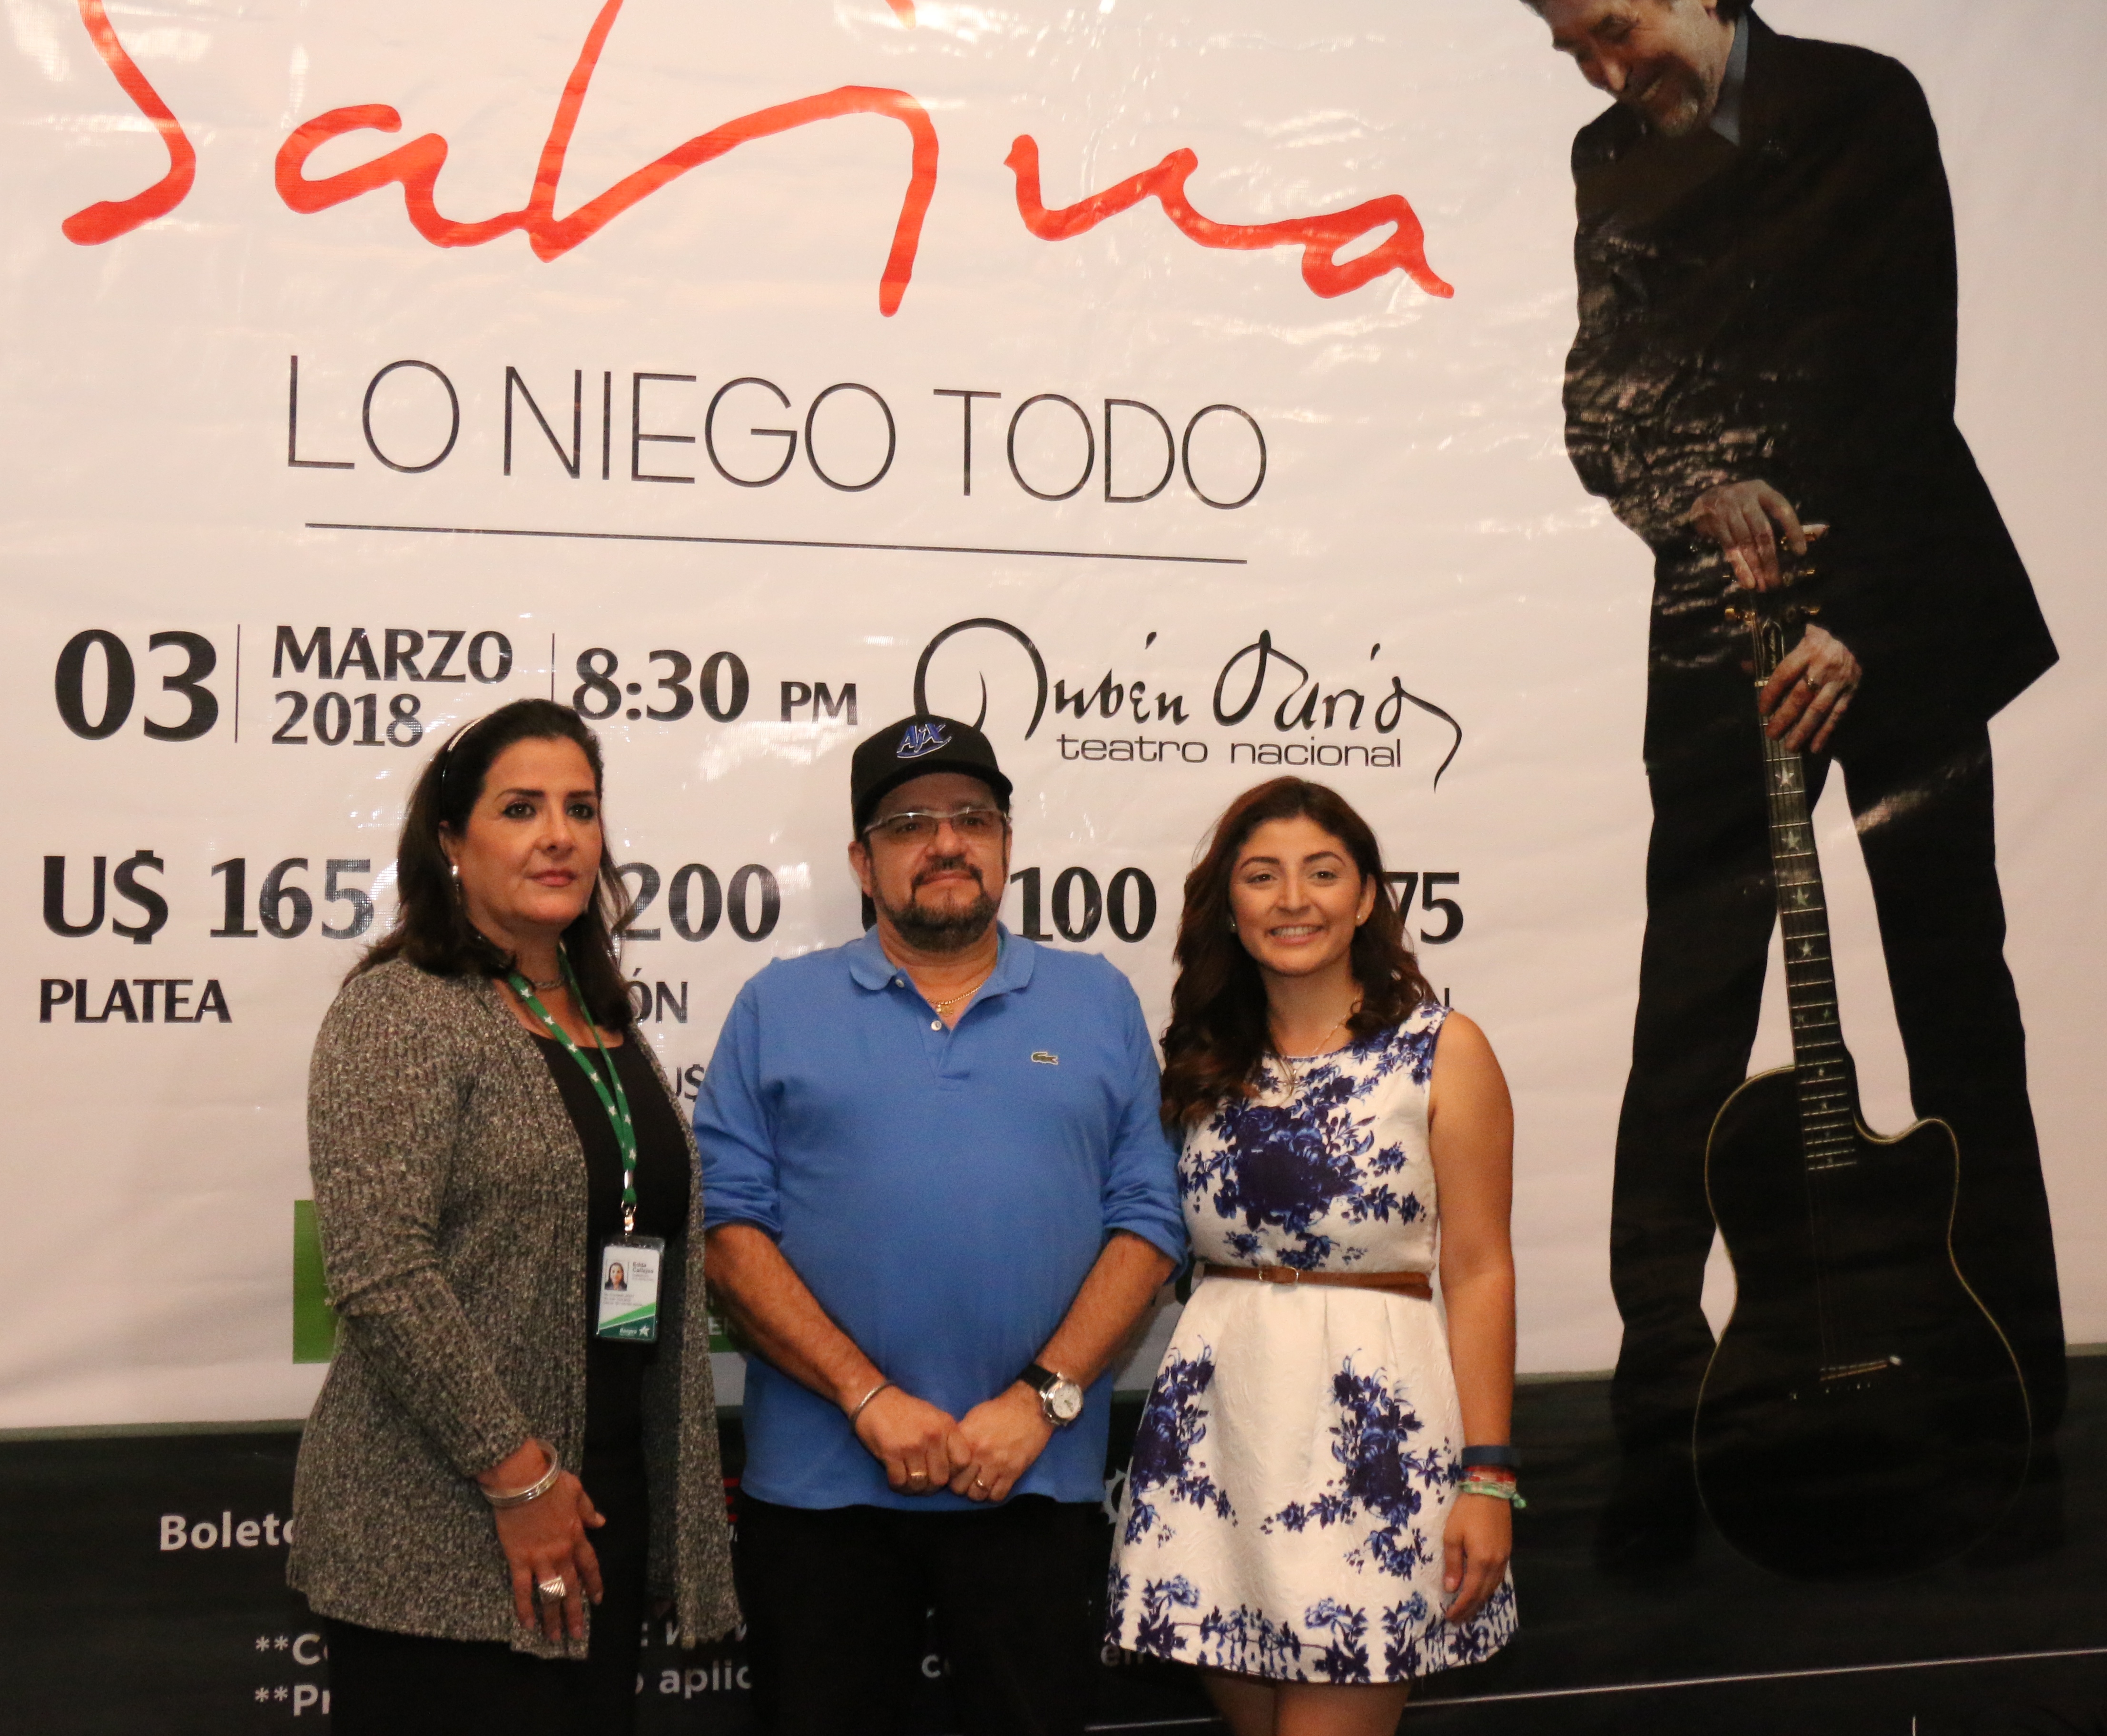 Nicaragua disfrutará de Joaquín Sabina y su gira “Lo niego todo”